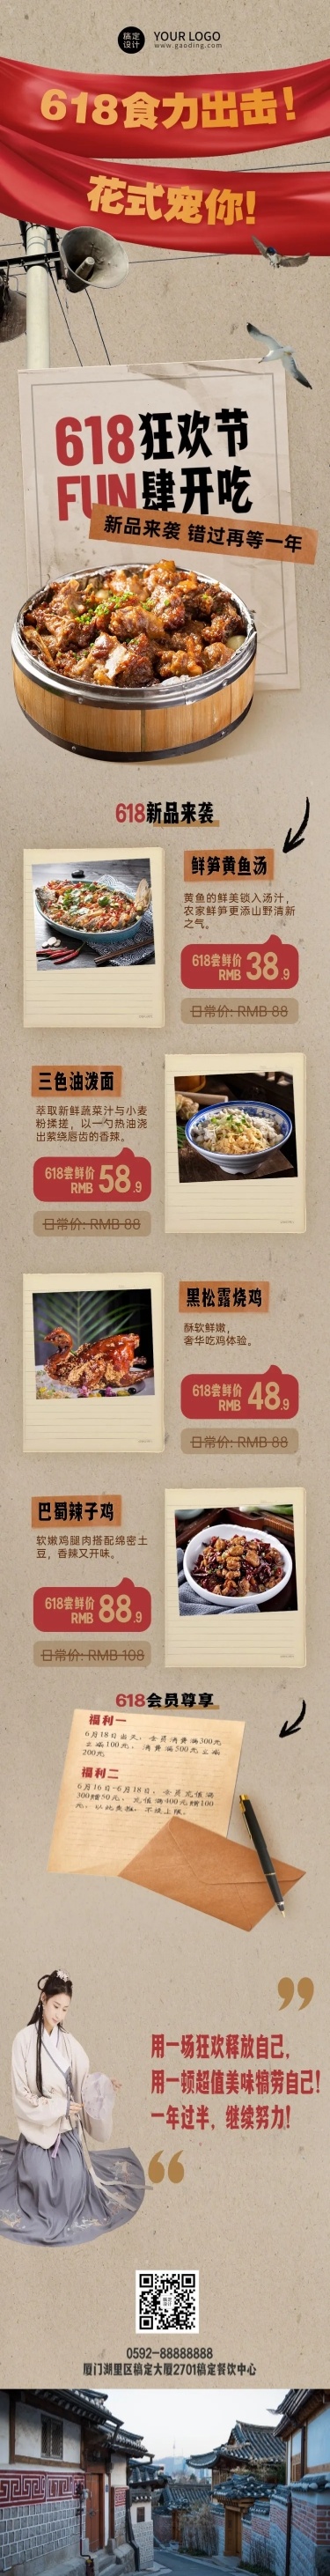 餐饮618中餐正餐店铺产品营销文章长图